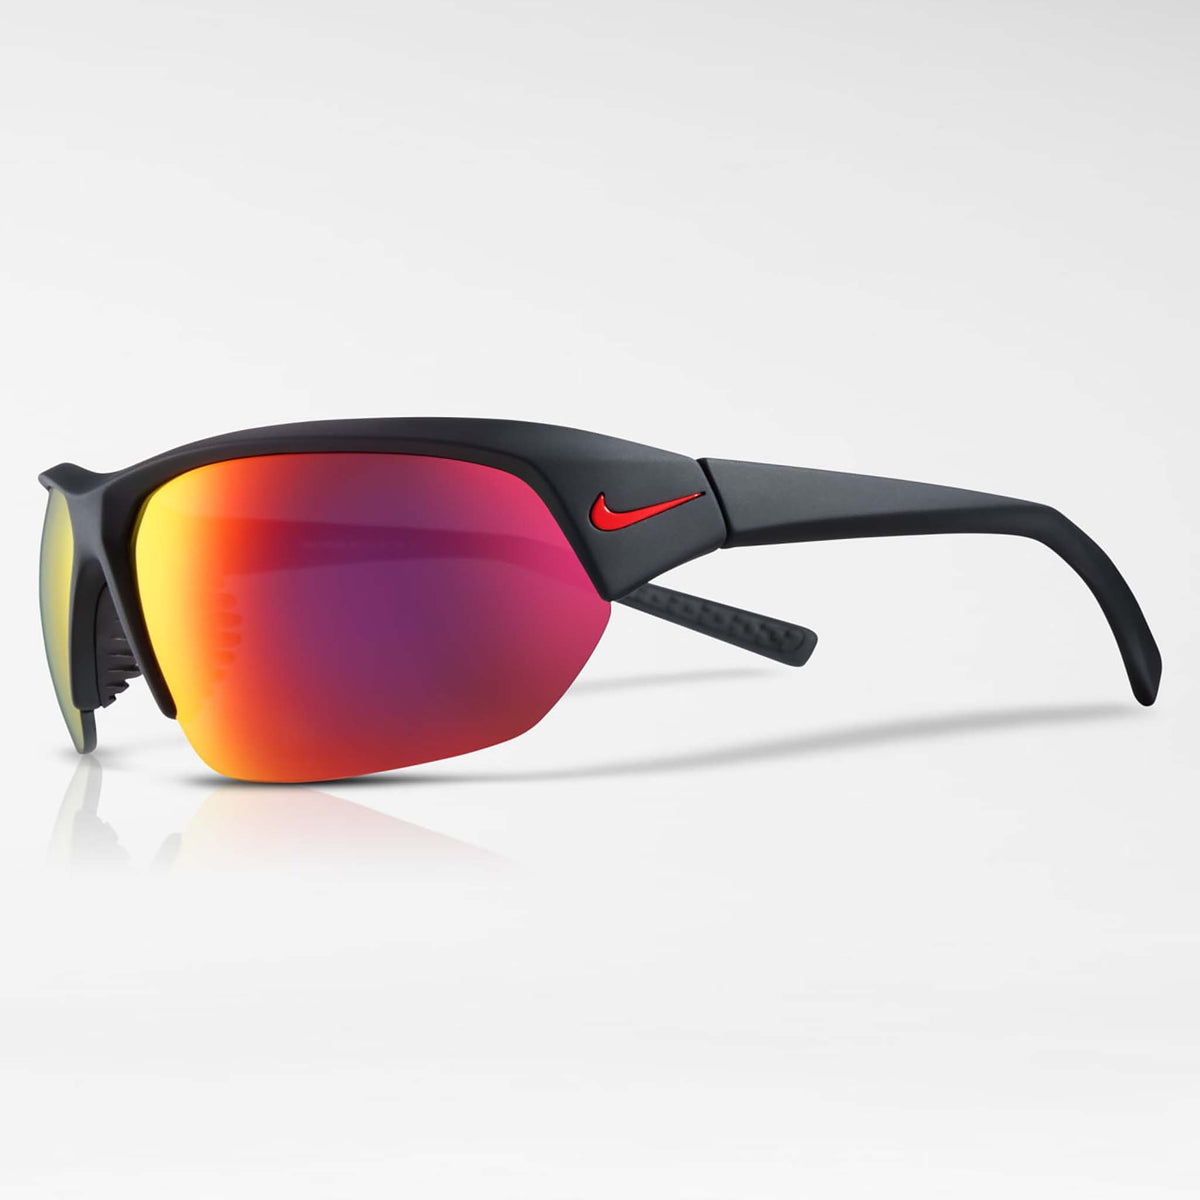 Nike Skylon Ace lunettes de soleil sport noir mat gris infrarouge lateral